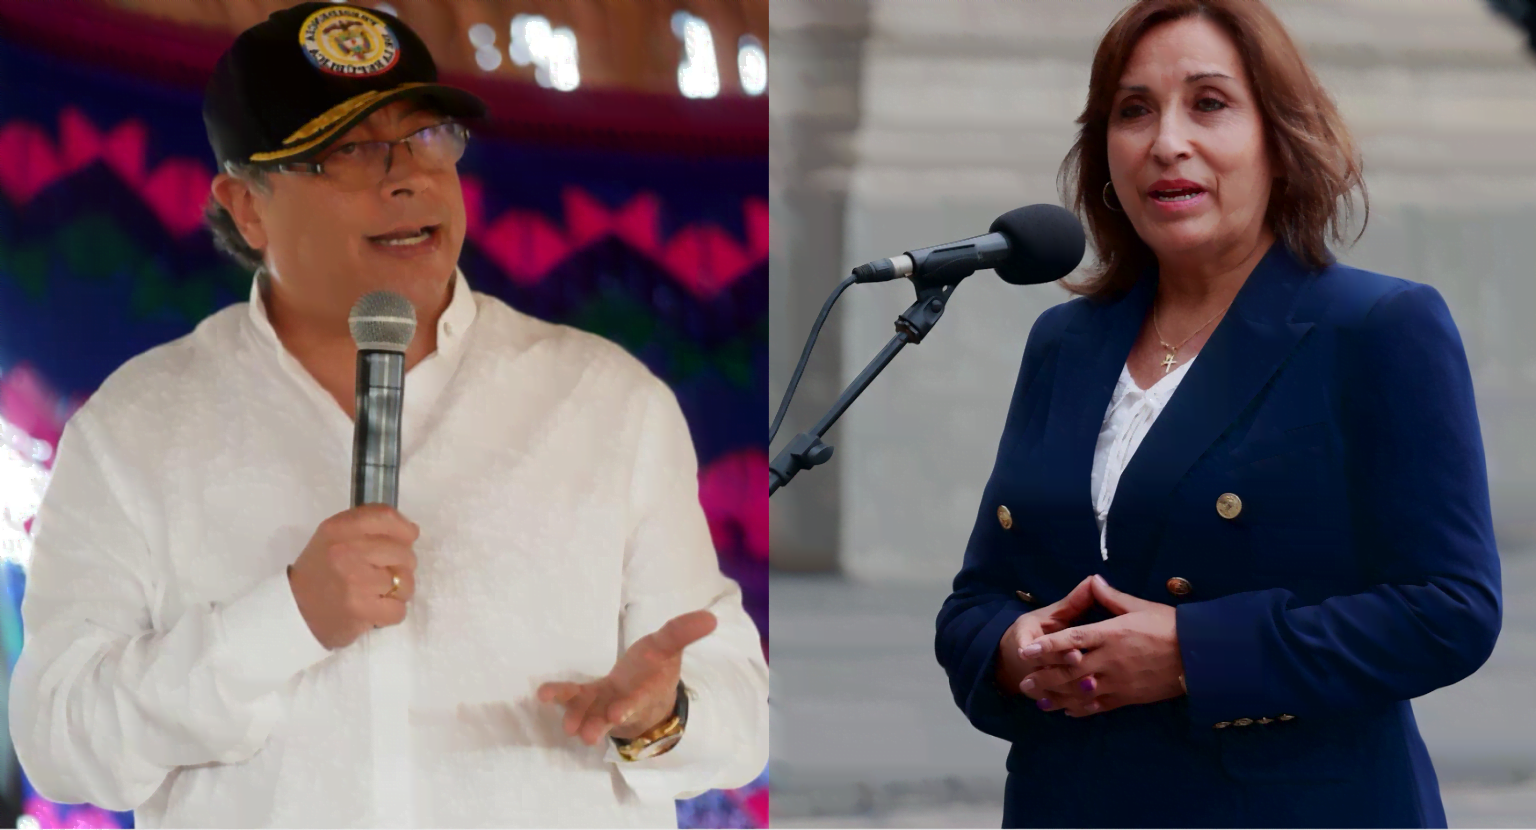 presidentes de perú y colombia en alocuciones pública